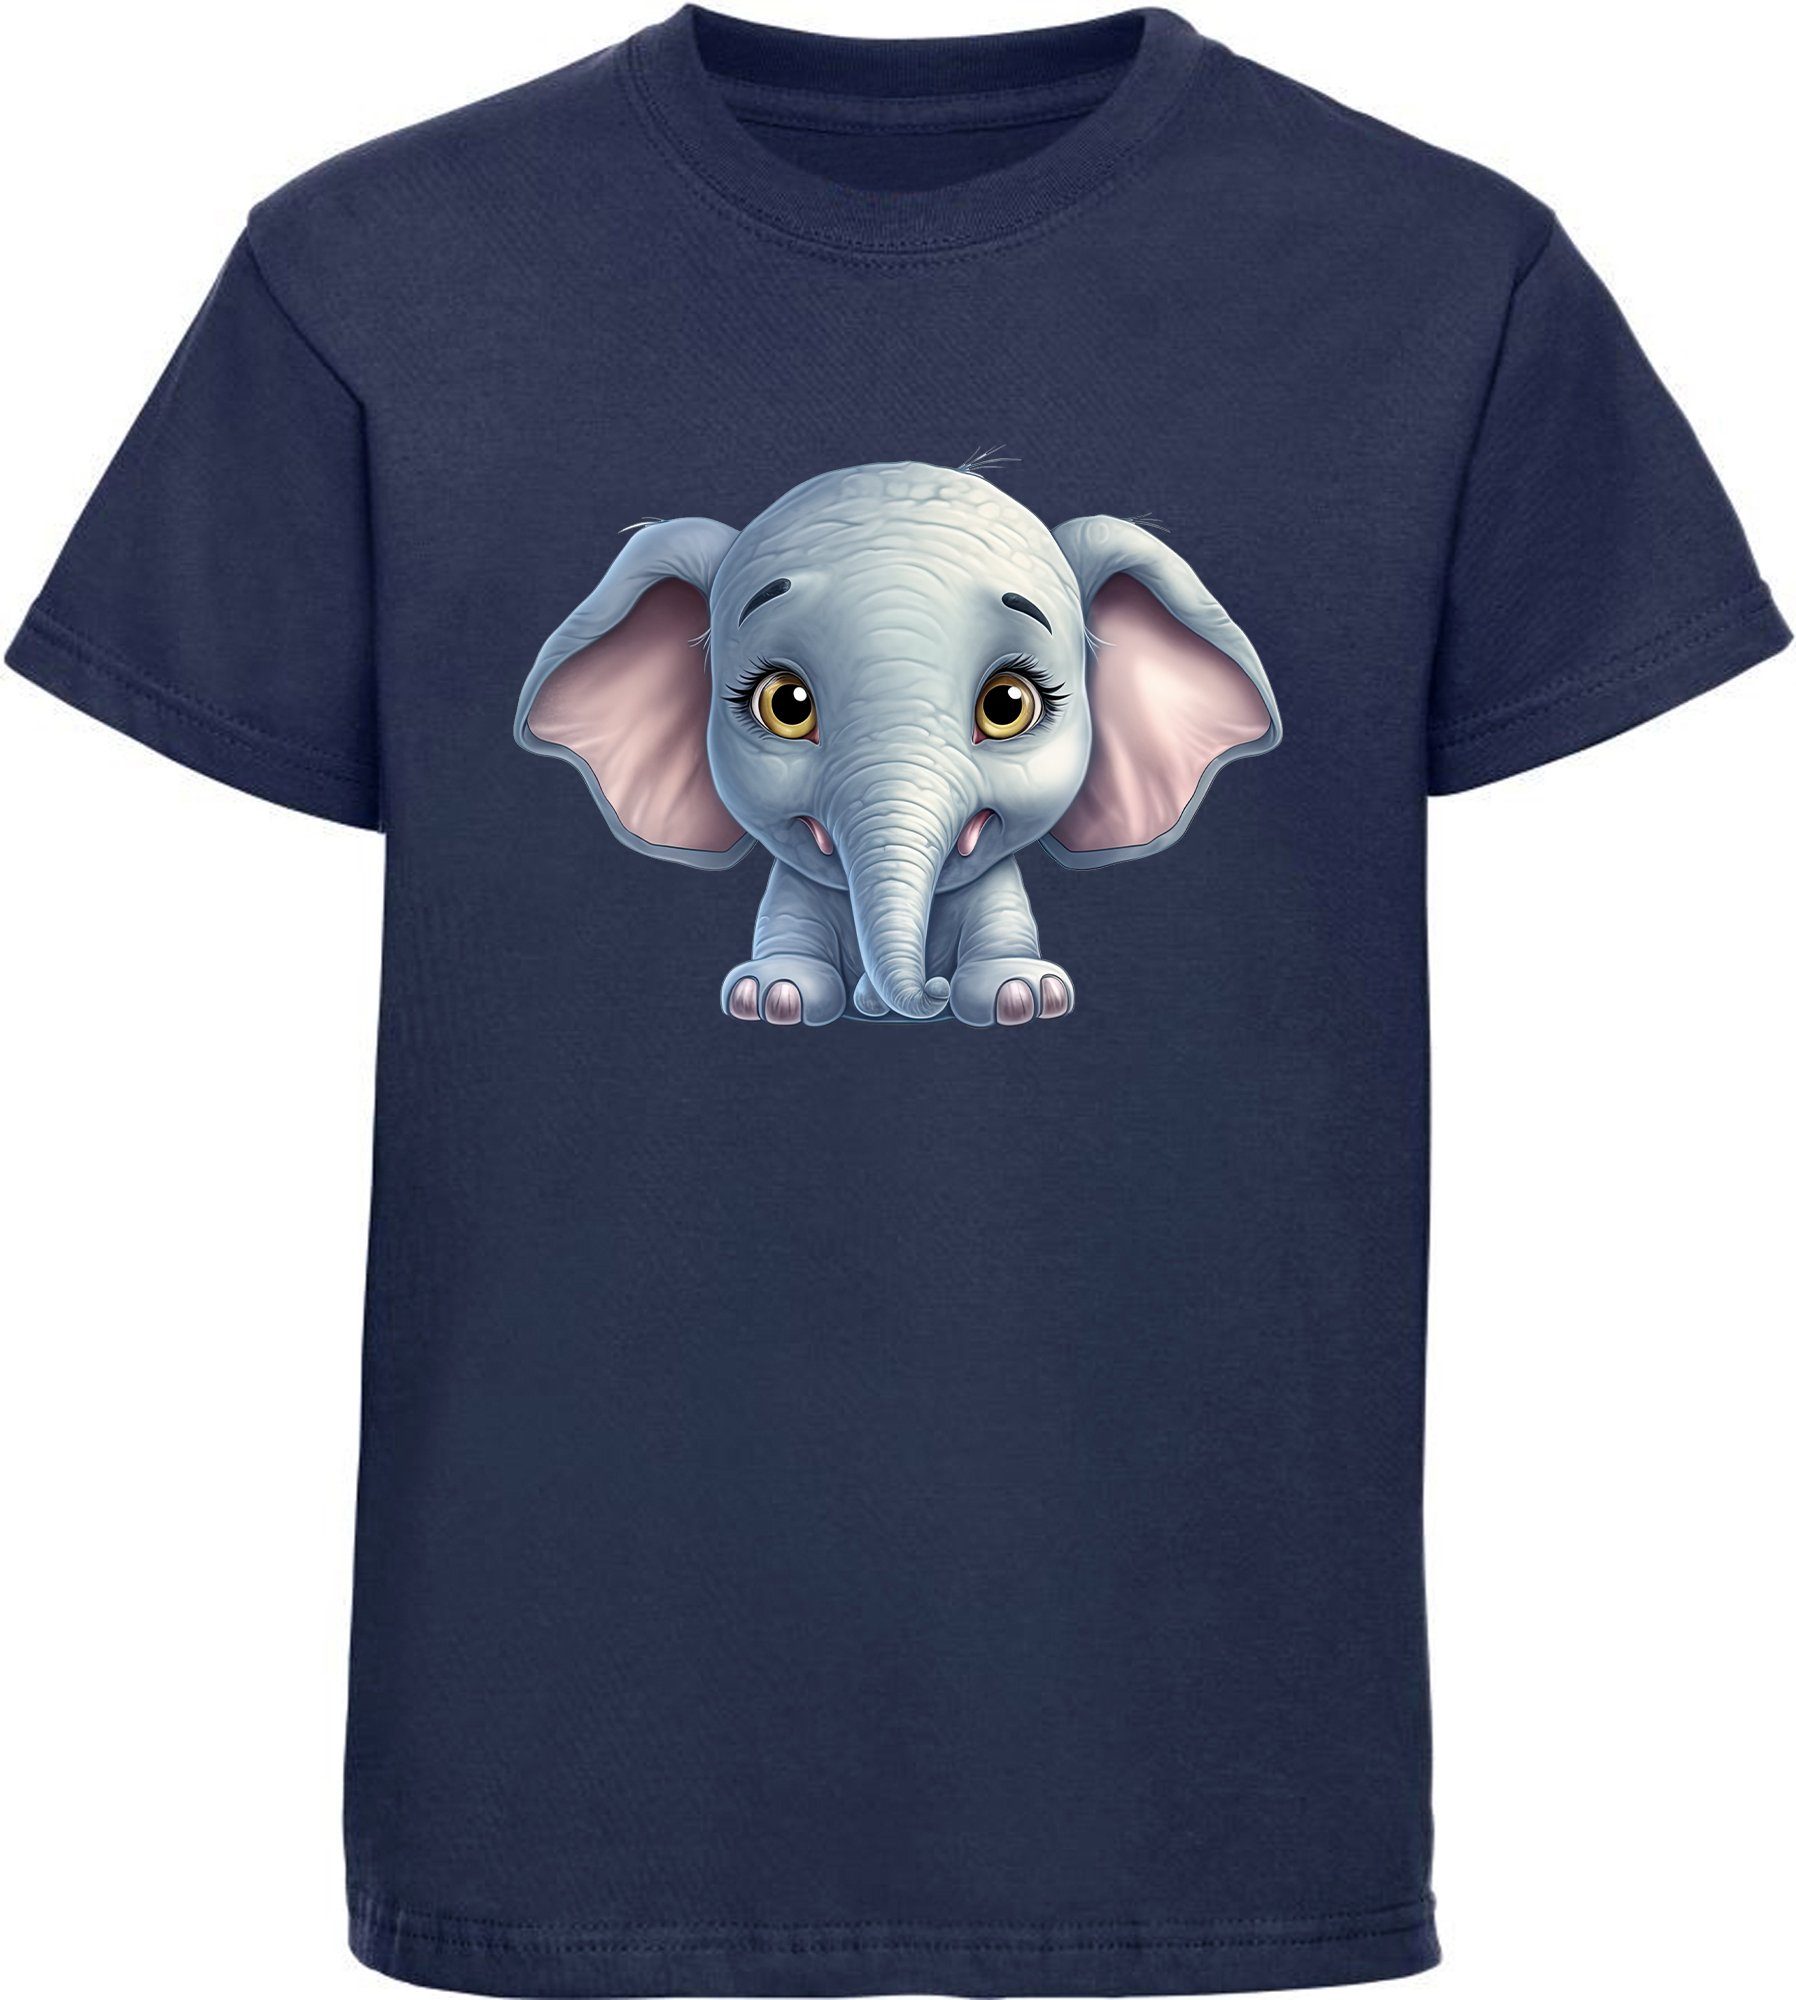 MyDesign24 T-Shirt Kinder Wildtier Print Shirt bedruckt - Baby Elefant Baumwollshirt mit Aufdruck, i272 navy blau